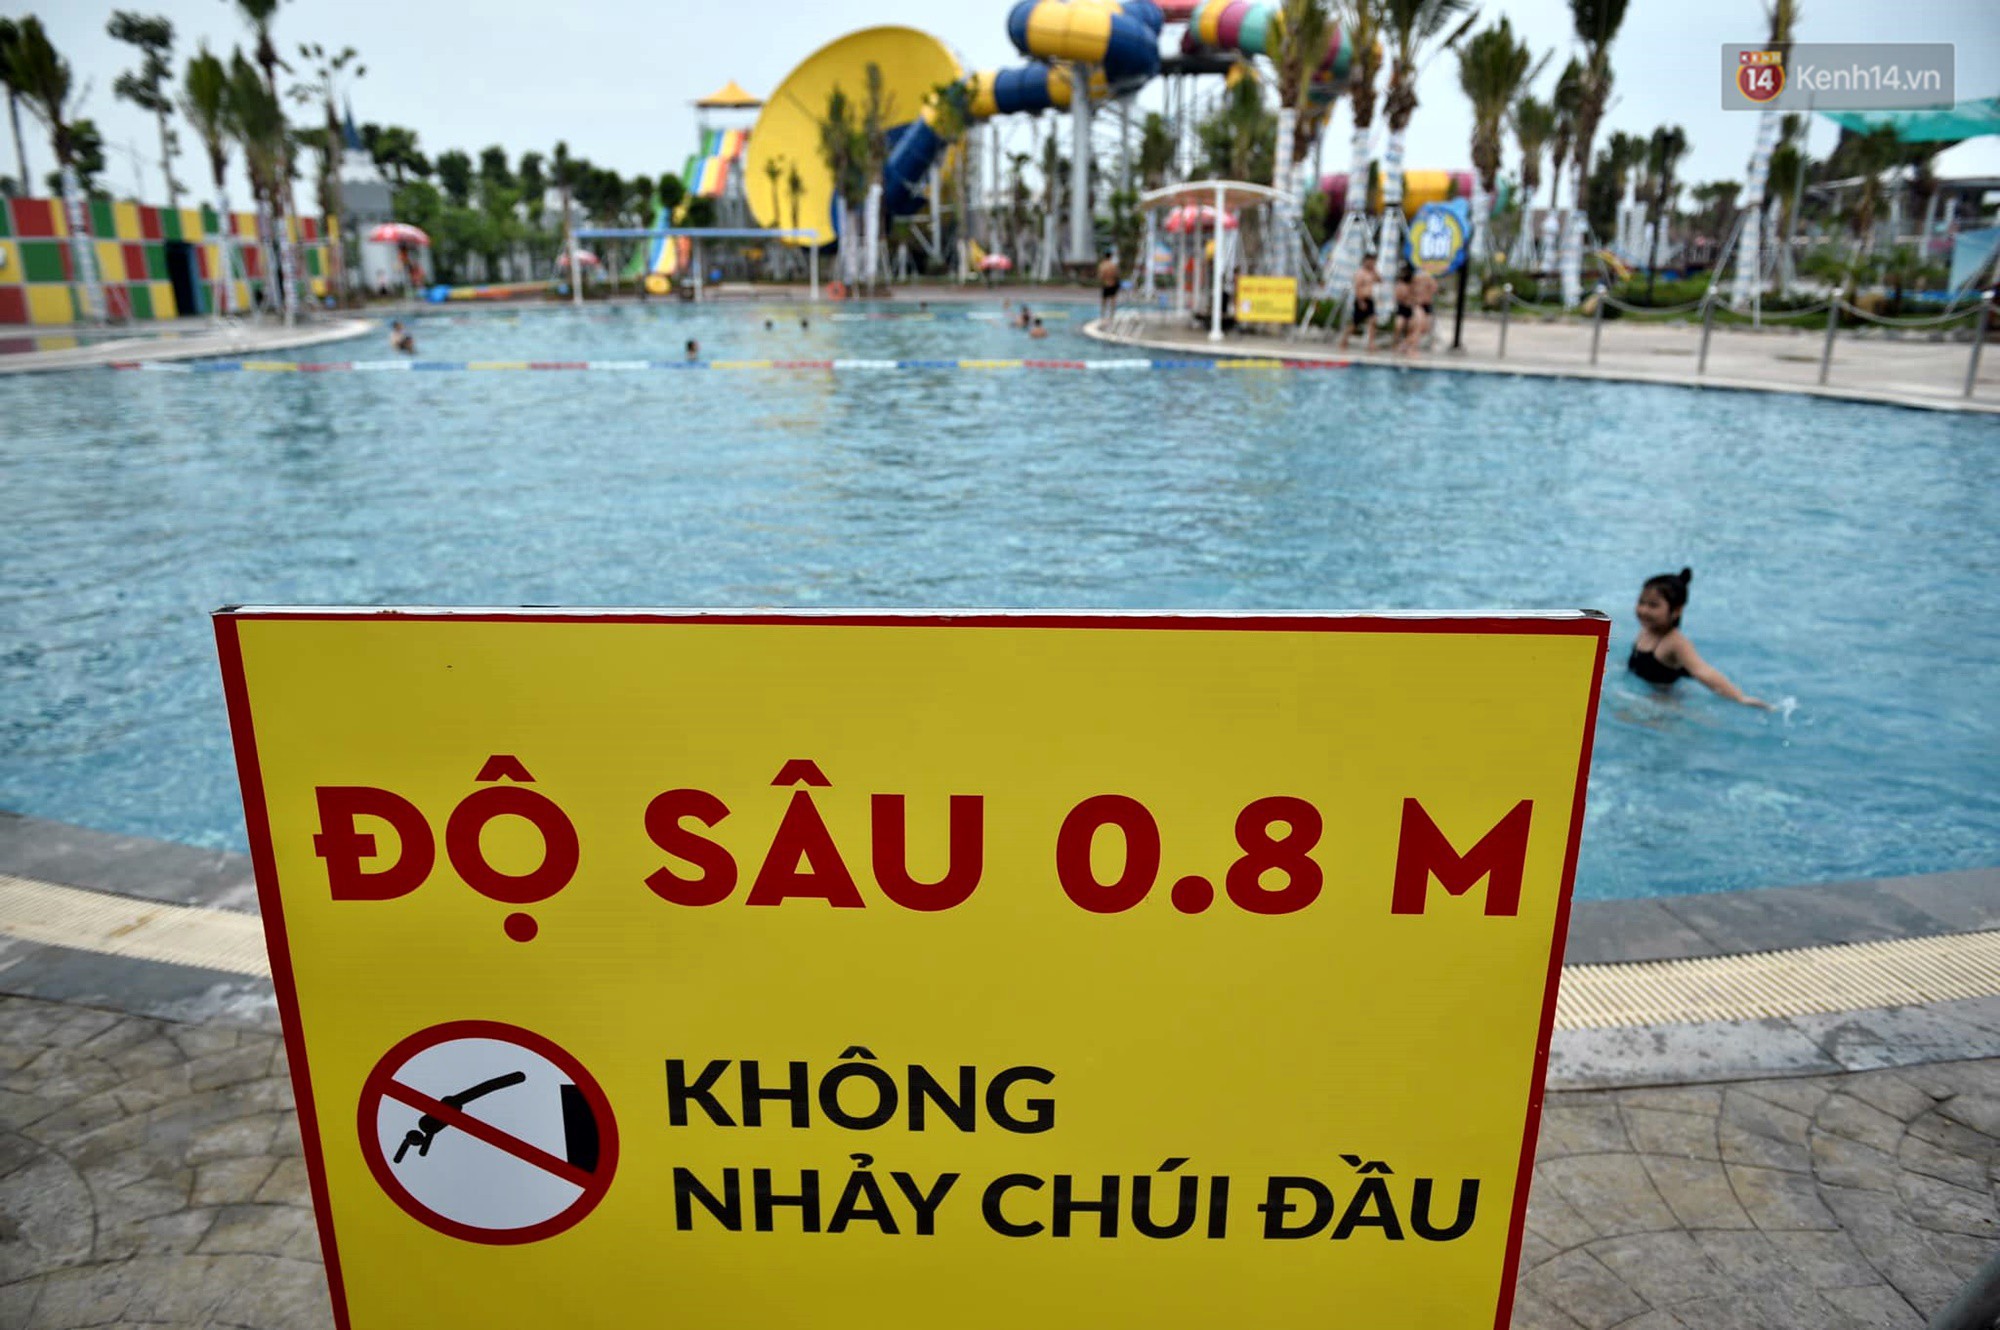 Công viên nước Thanh Hà mở cửa trở lại sau nửa tháng nâng cấp - Ảnh 4.